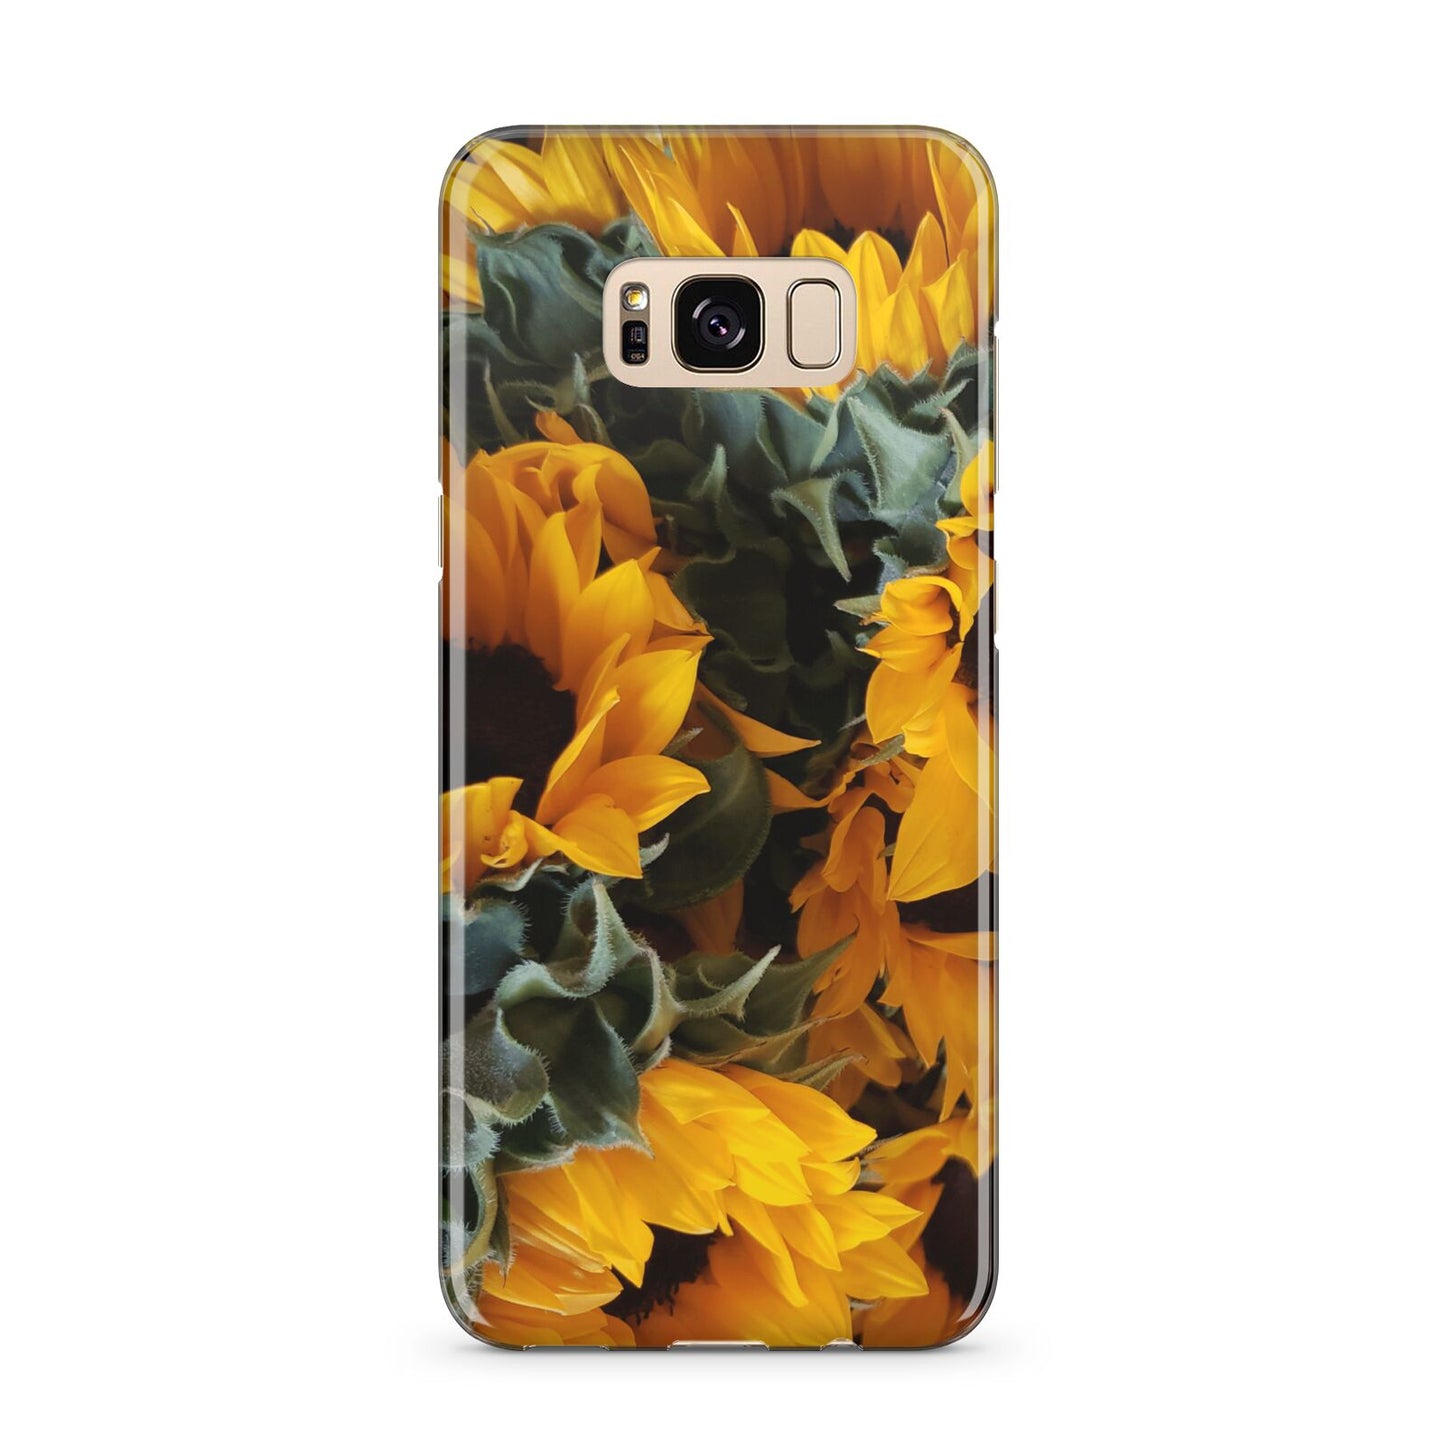 Sunflower Samsung Galaxy S8 Plus Case